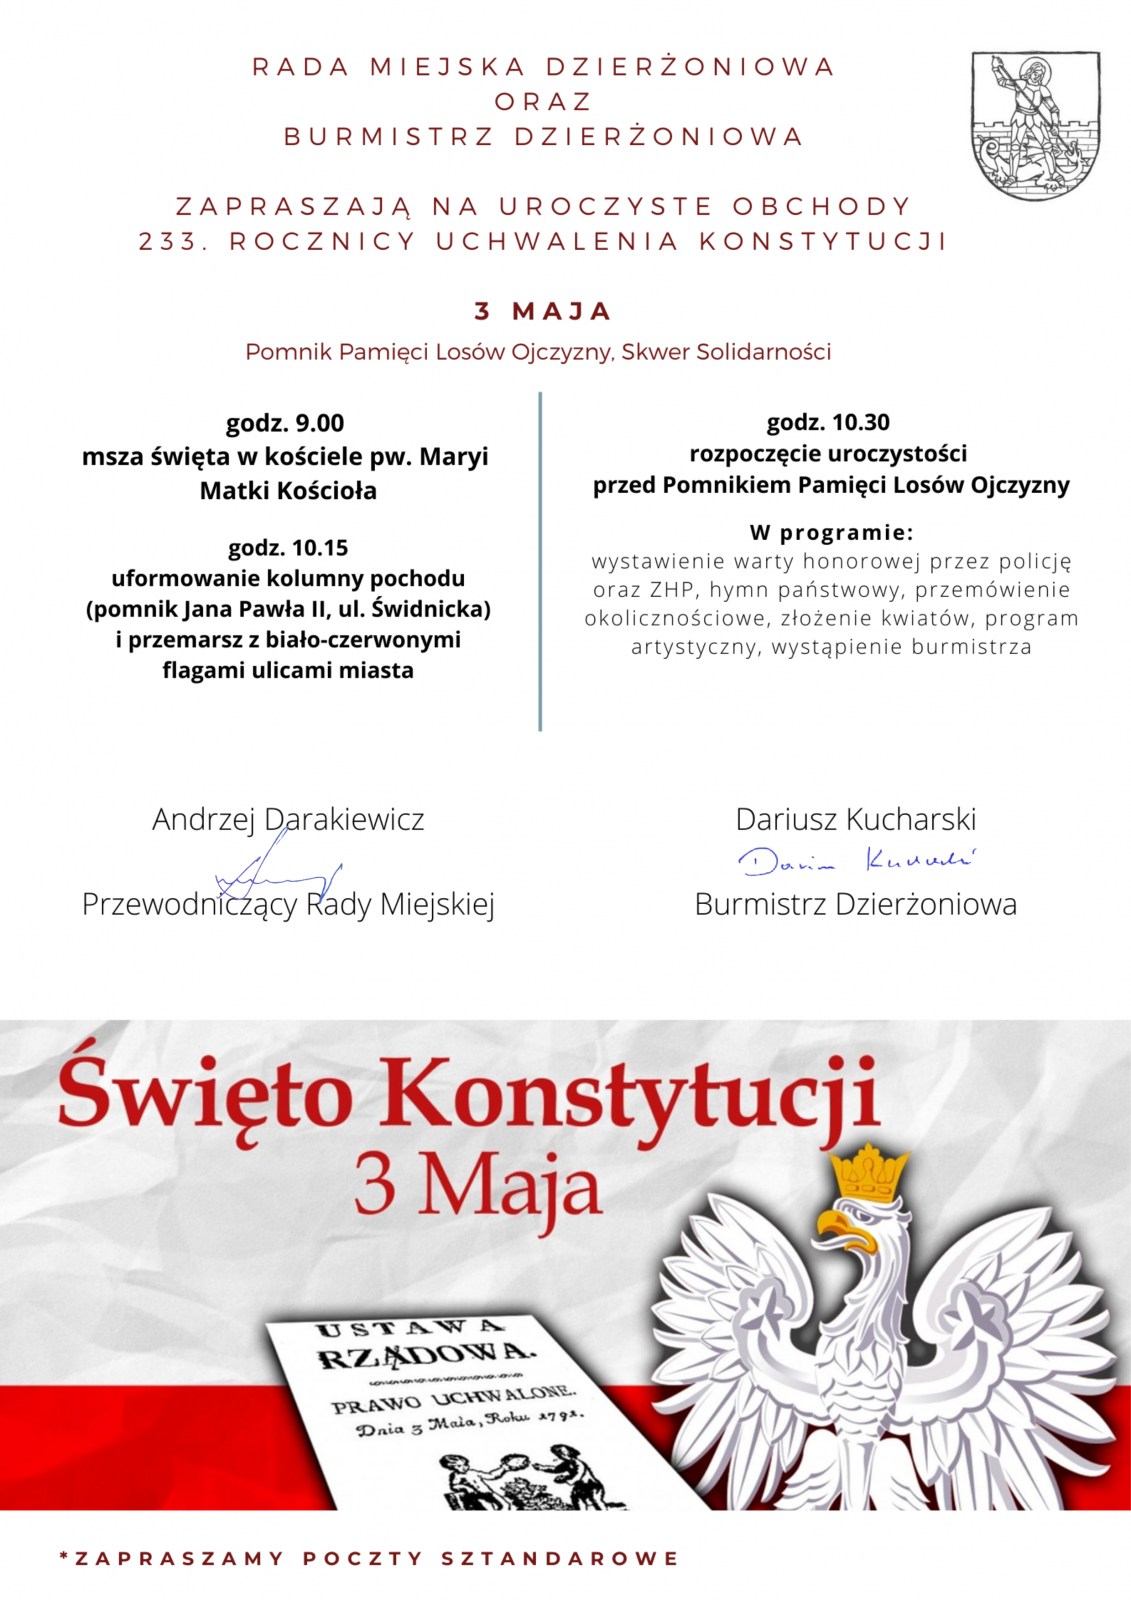 Plakat z informacjami zawartymi w tekście oraz flaga i godło Polski